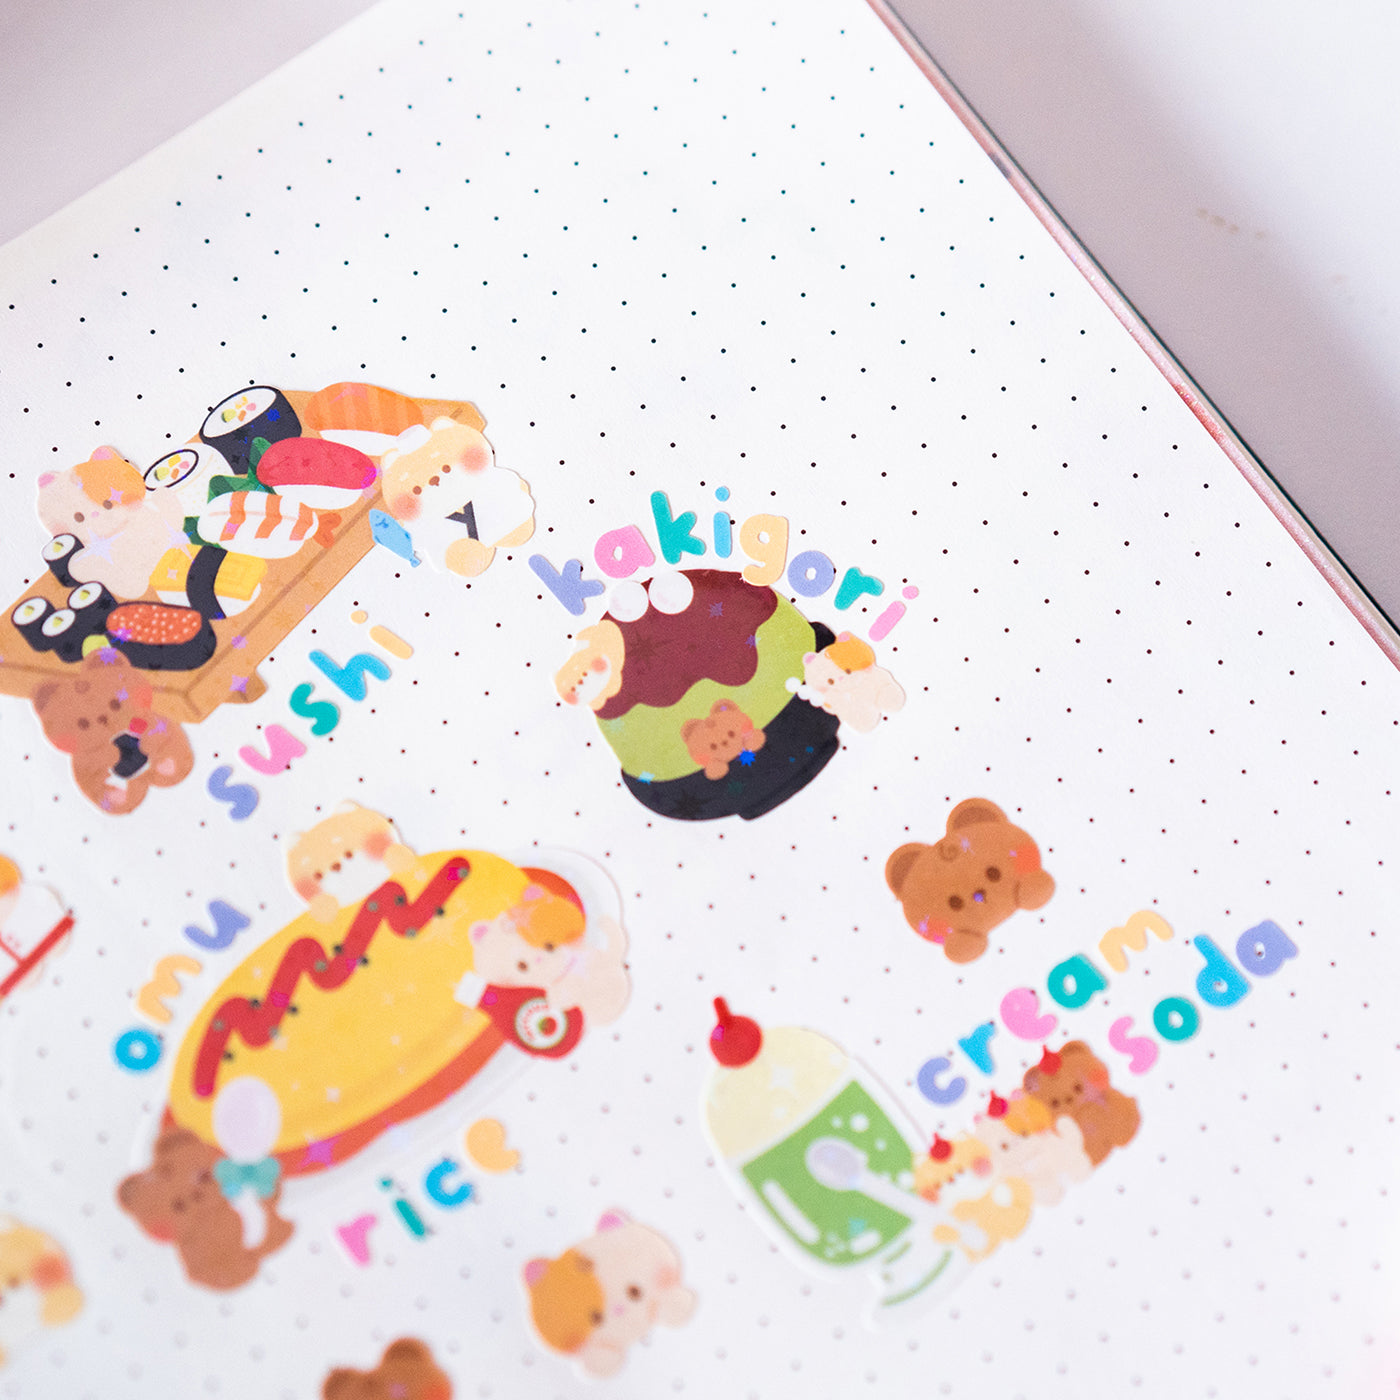 *new* Cute Pastel Handwritten Alphabets Journal Sticker Sheet